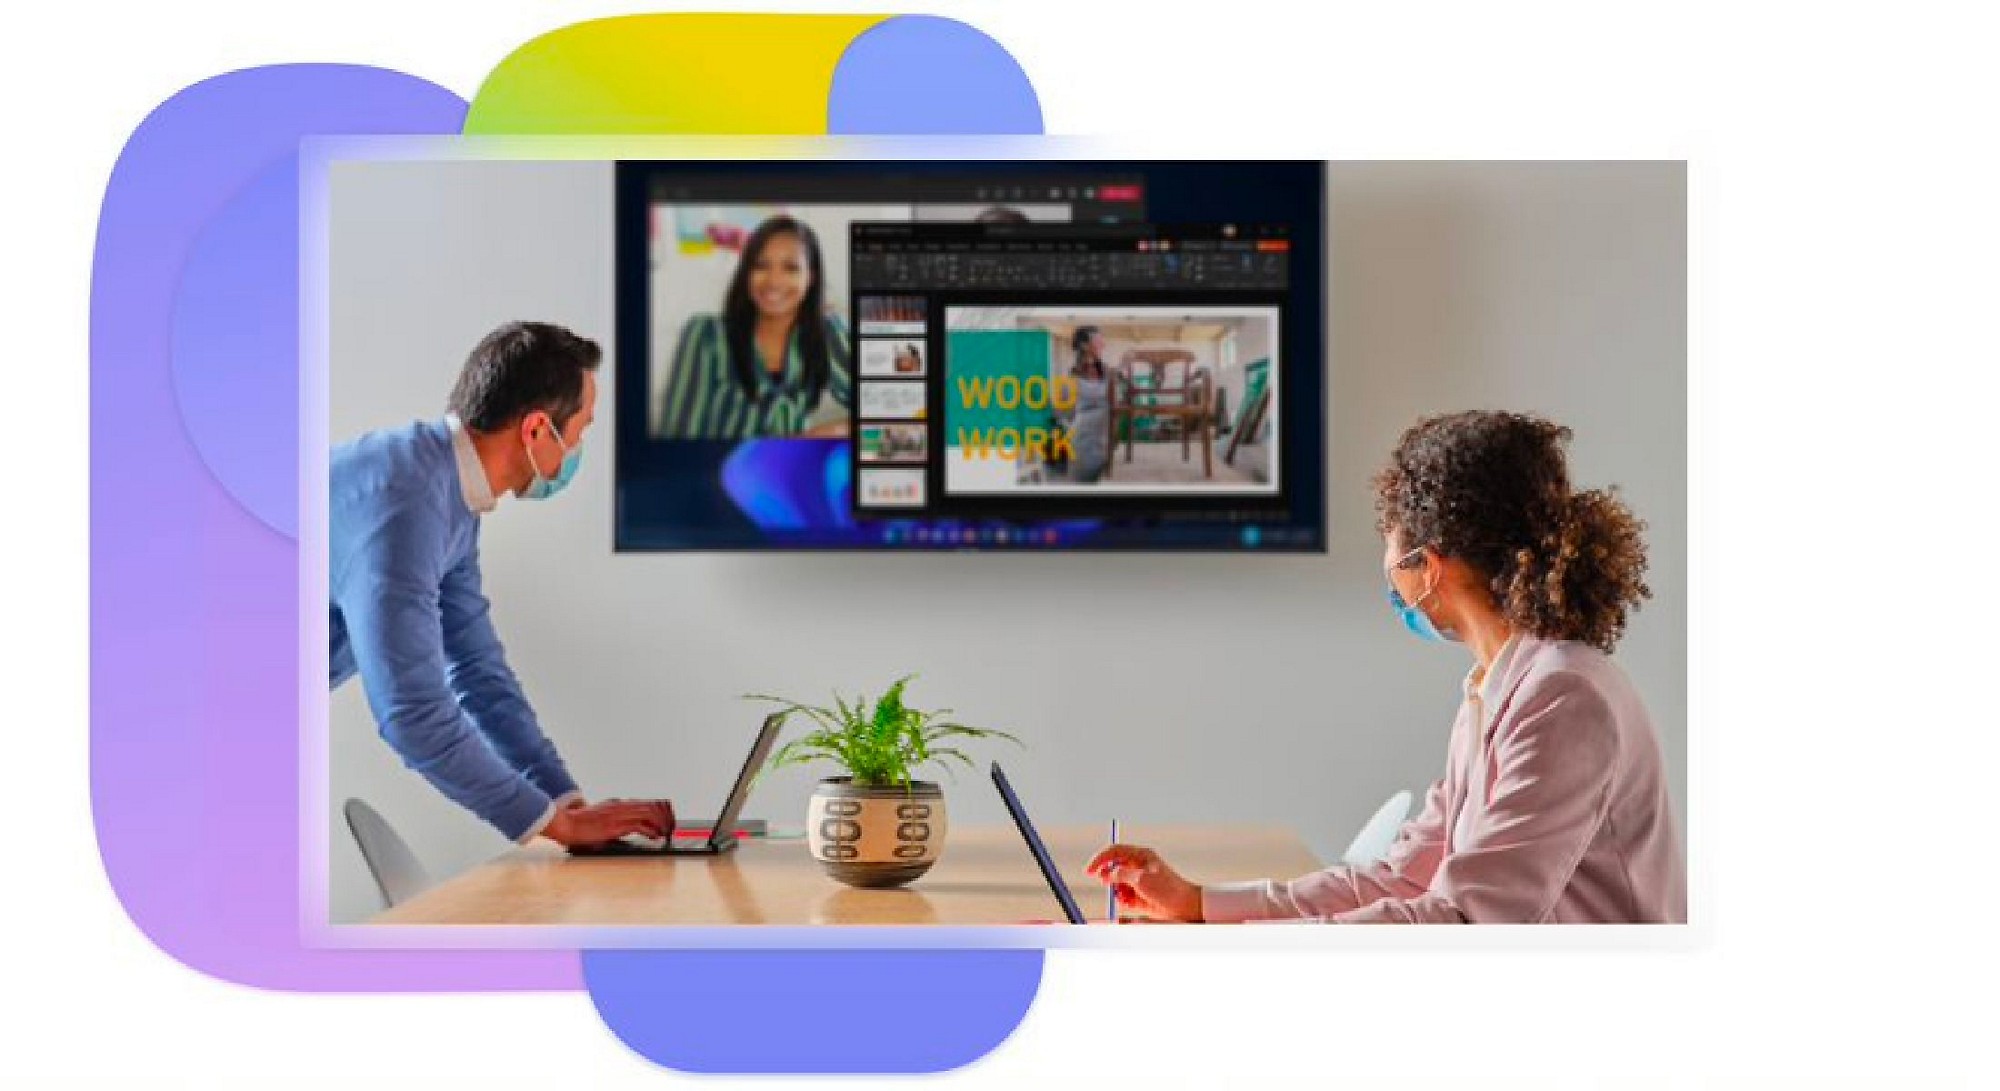 Dos personas en una sala de reuniones que están usando portátiles y mirando una pantalla en la pared que muestra una videollamada de Teams y una presentación.